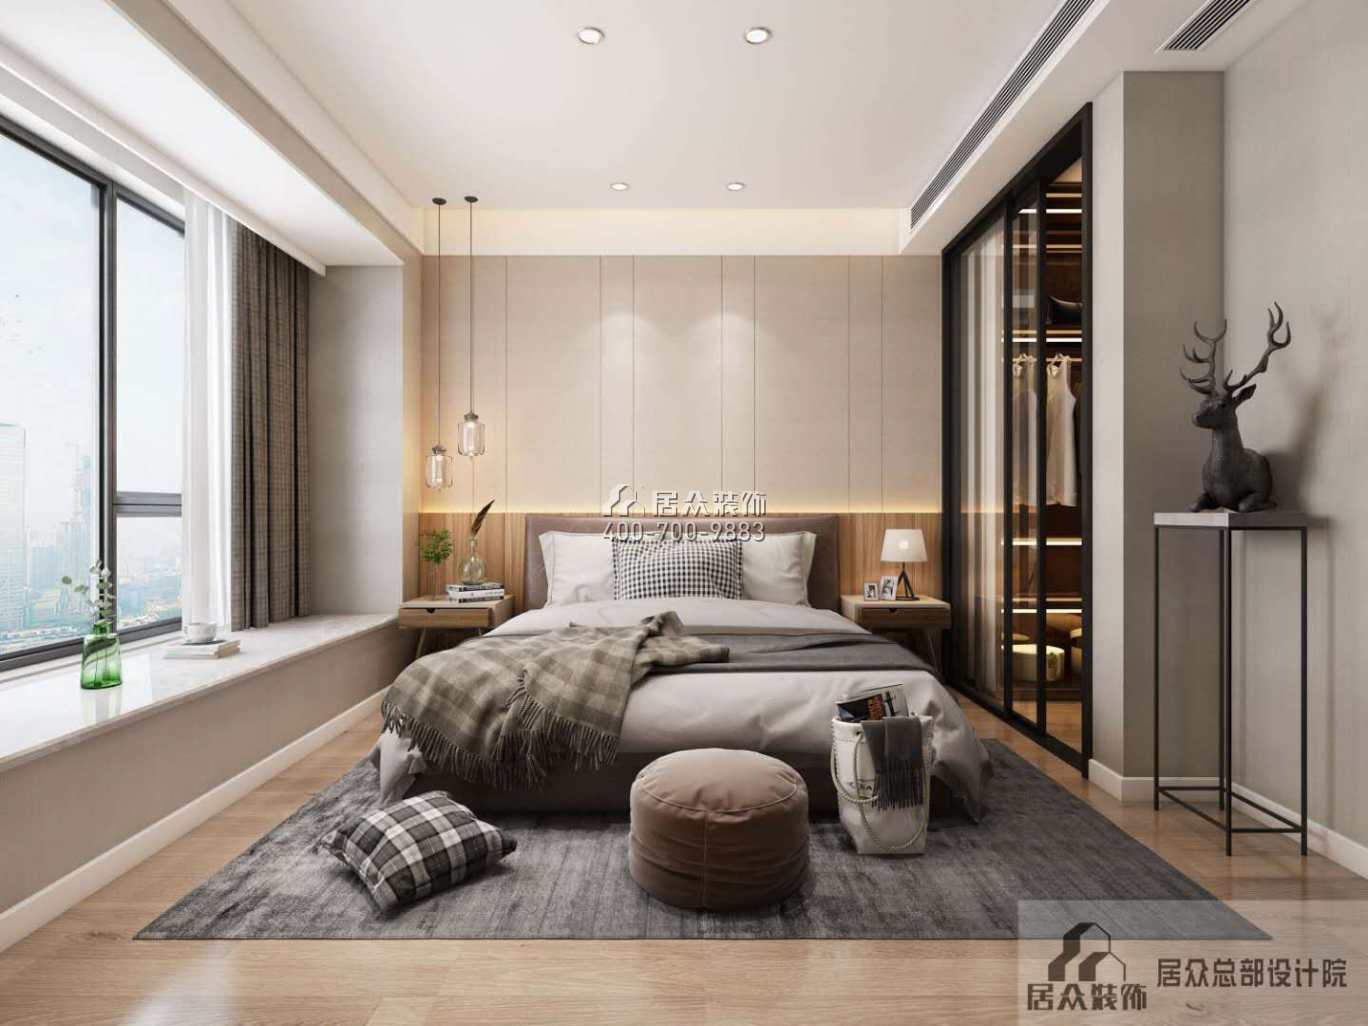 銀湖藍山潤園二期120平方米現代簡約風格平層戶型臥室裝修效果圖